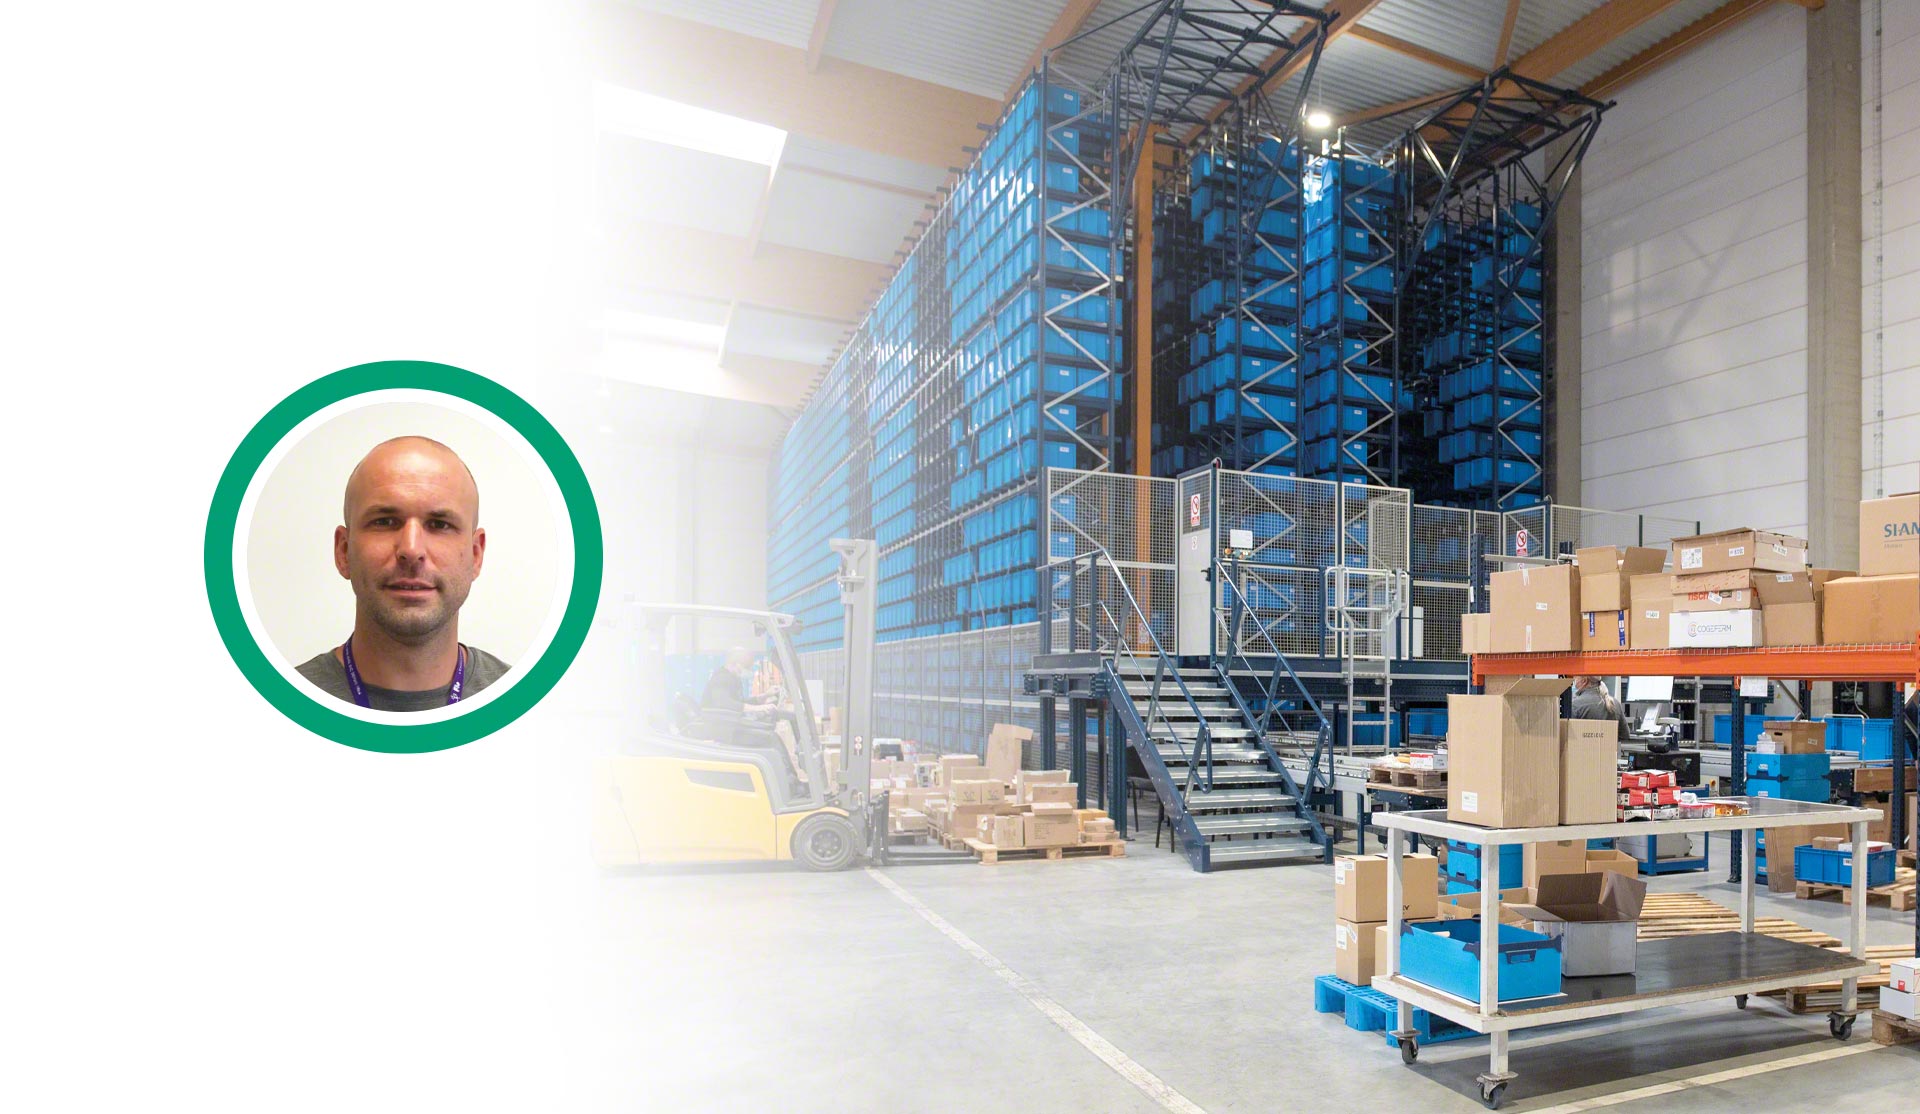 Entretien avec Yannick Taton, responsable Approvisionnement, Logistique et Transport de FIC